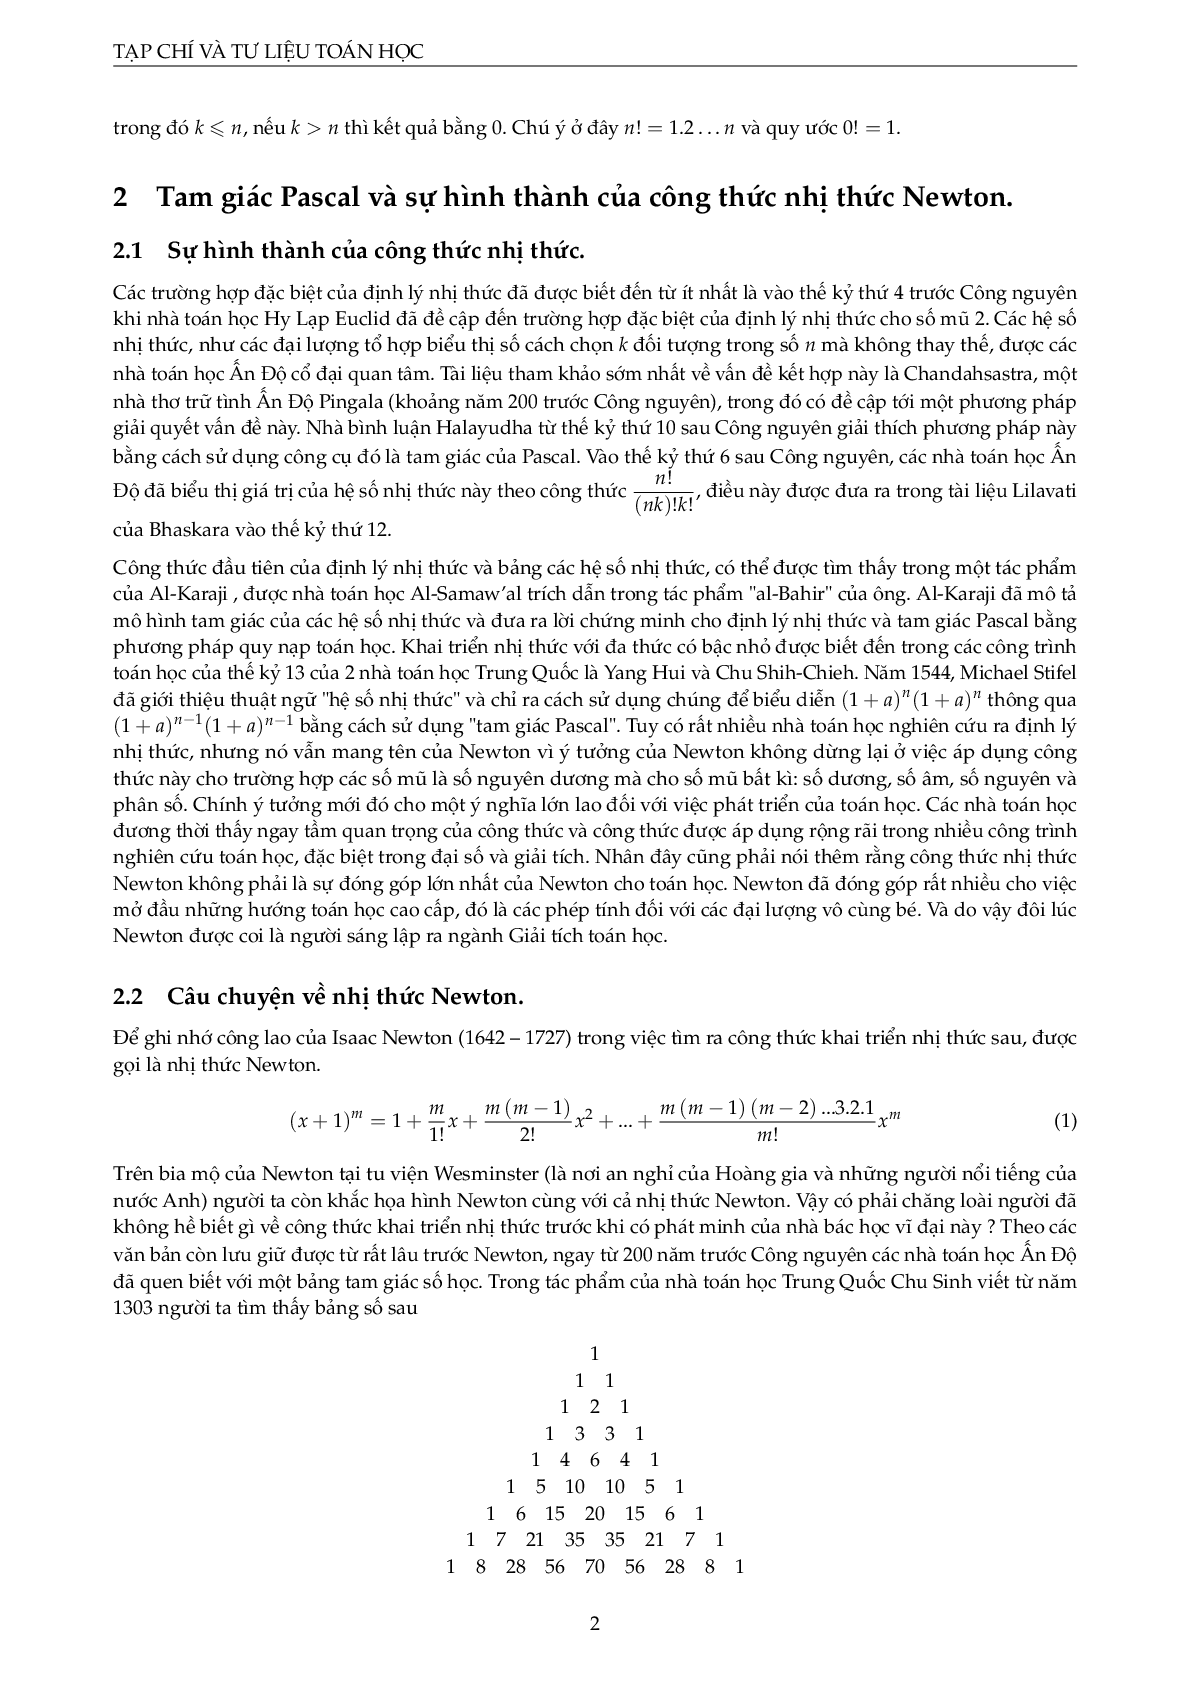 Nhị thức Newton và ứng dụng (trang 5)